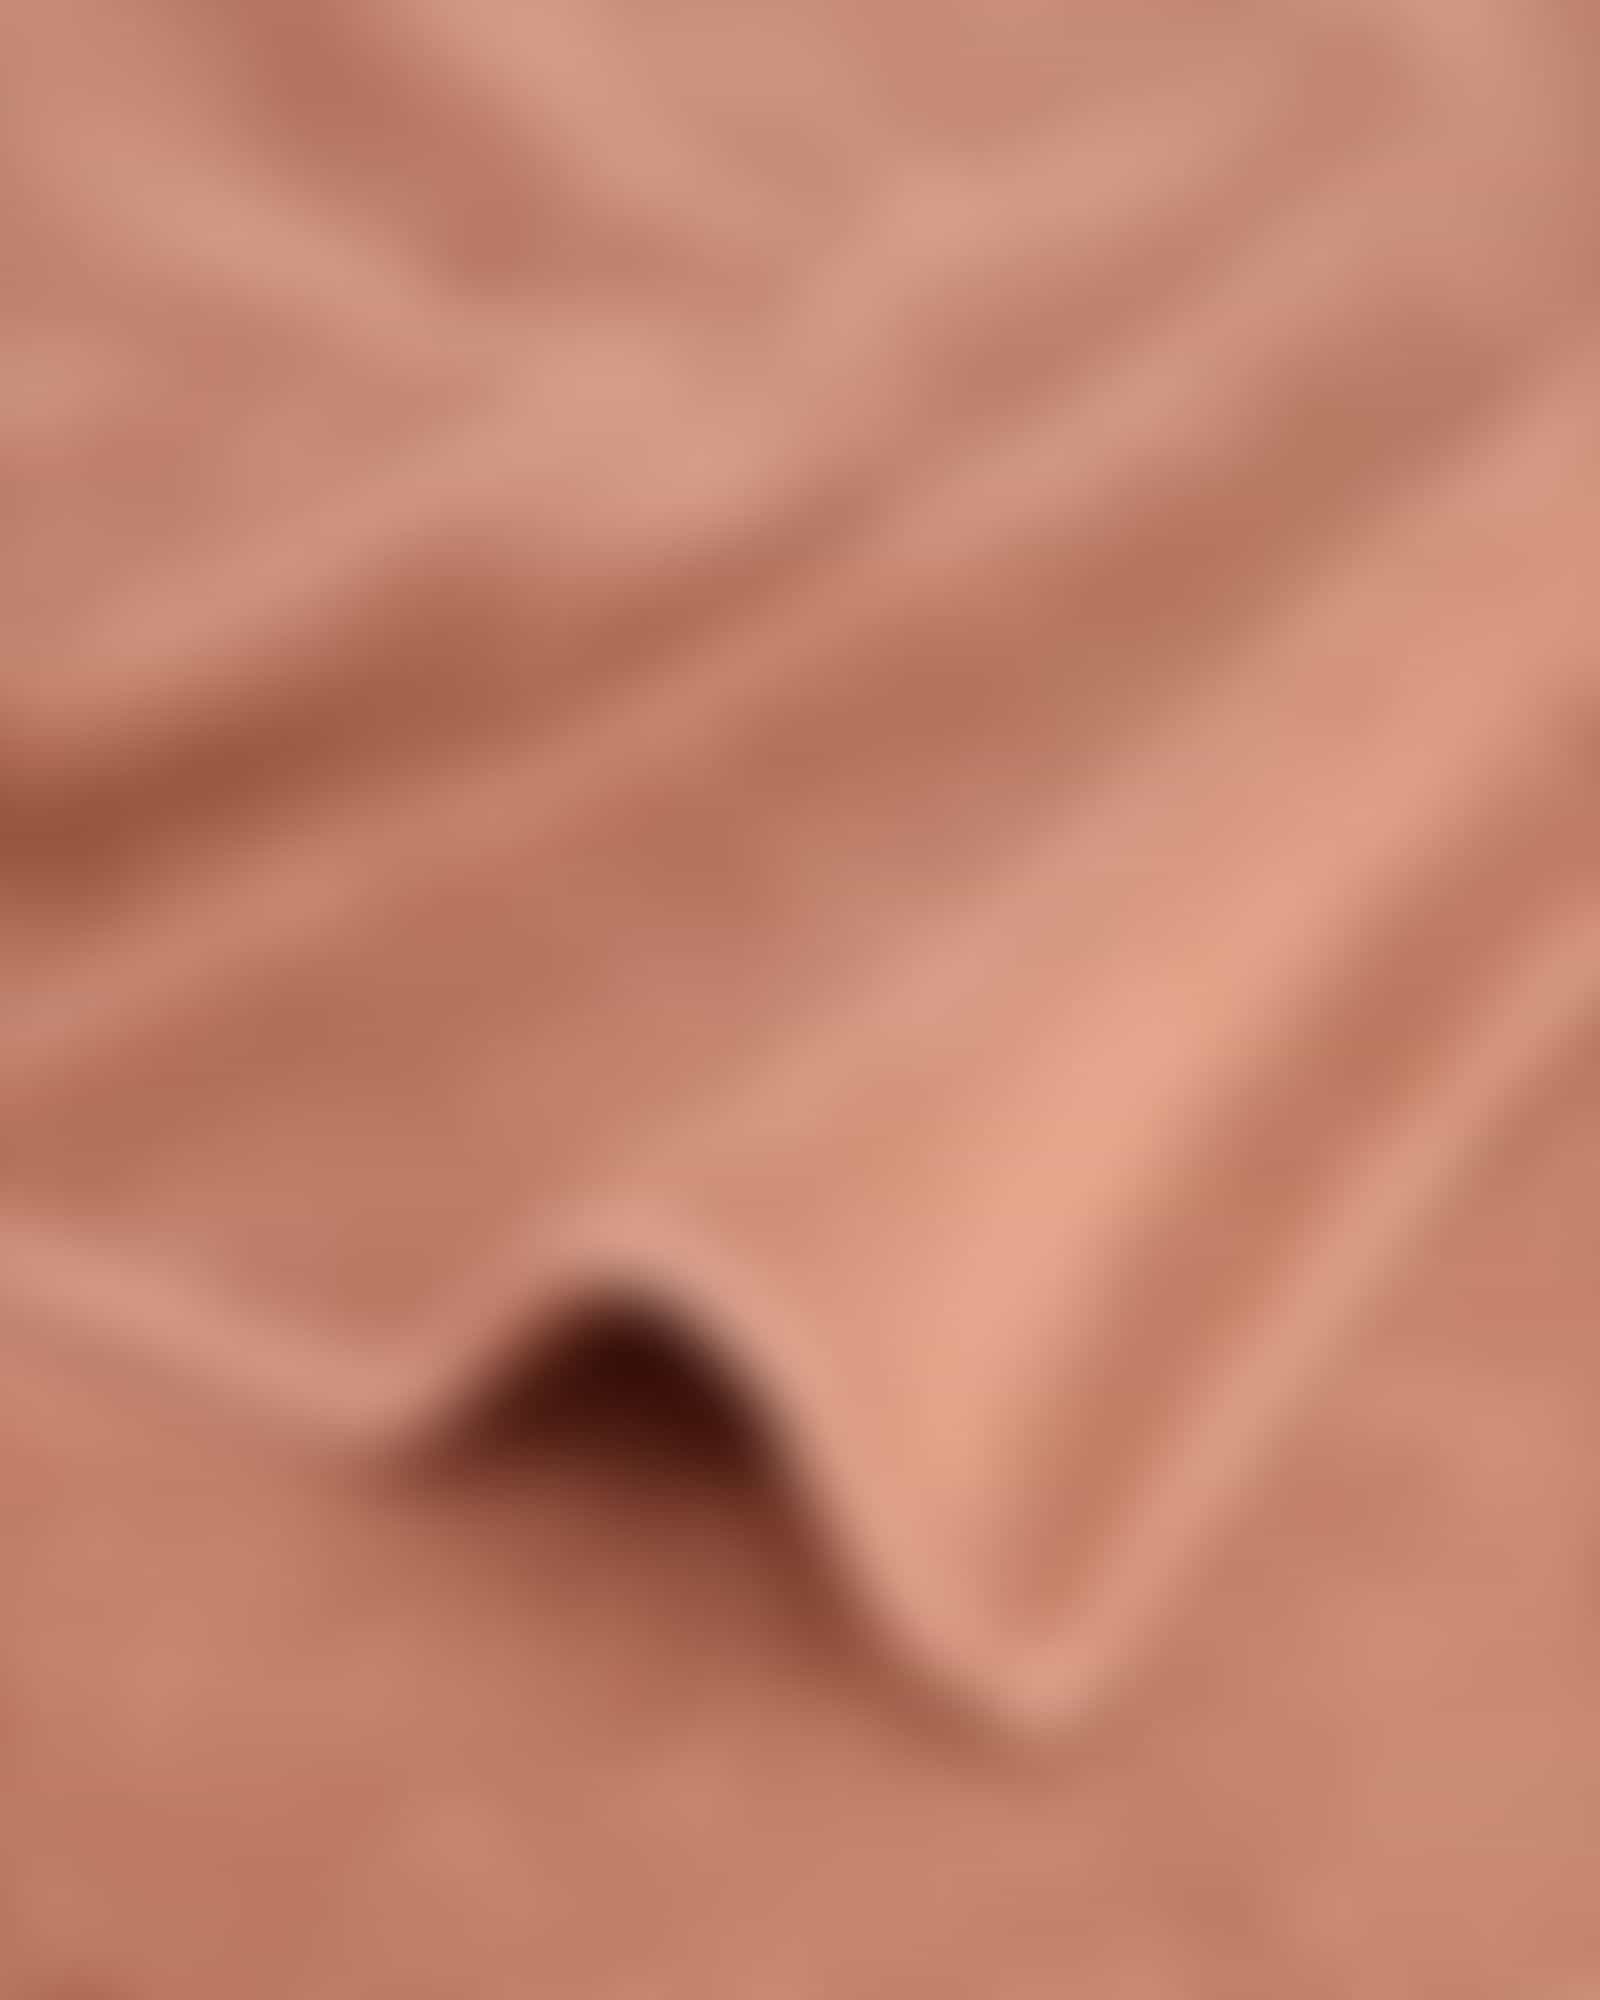 Cawö Handtücher Pure 6500 - Farbe: zimt - 369 - Waschhandschuh 16x22 cm